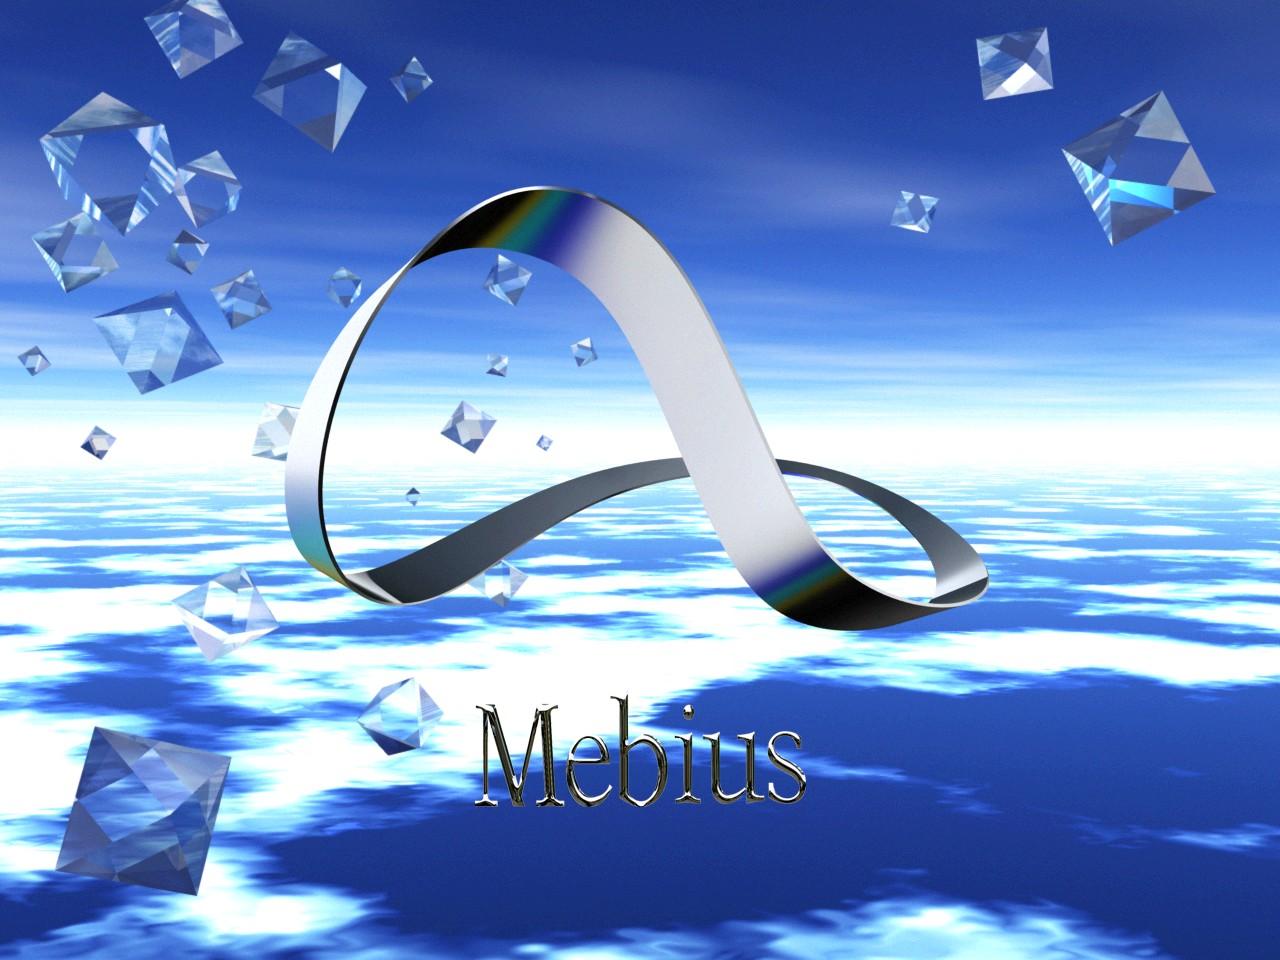 The mebius logo - 2000s